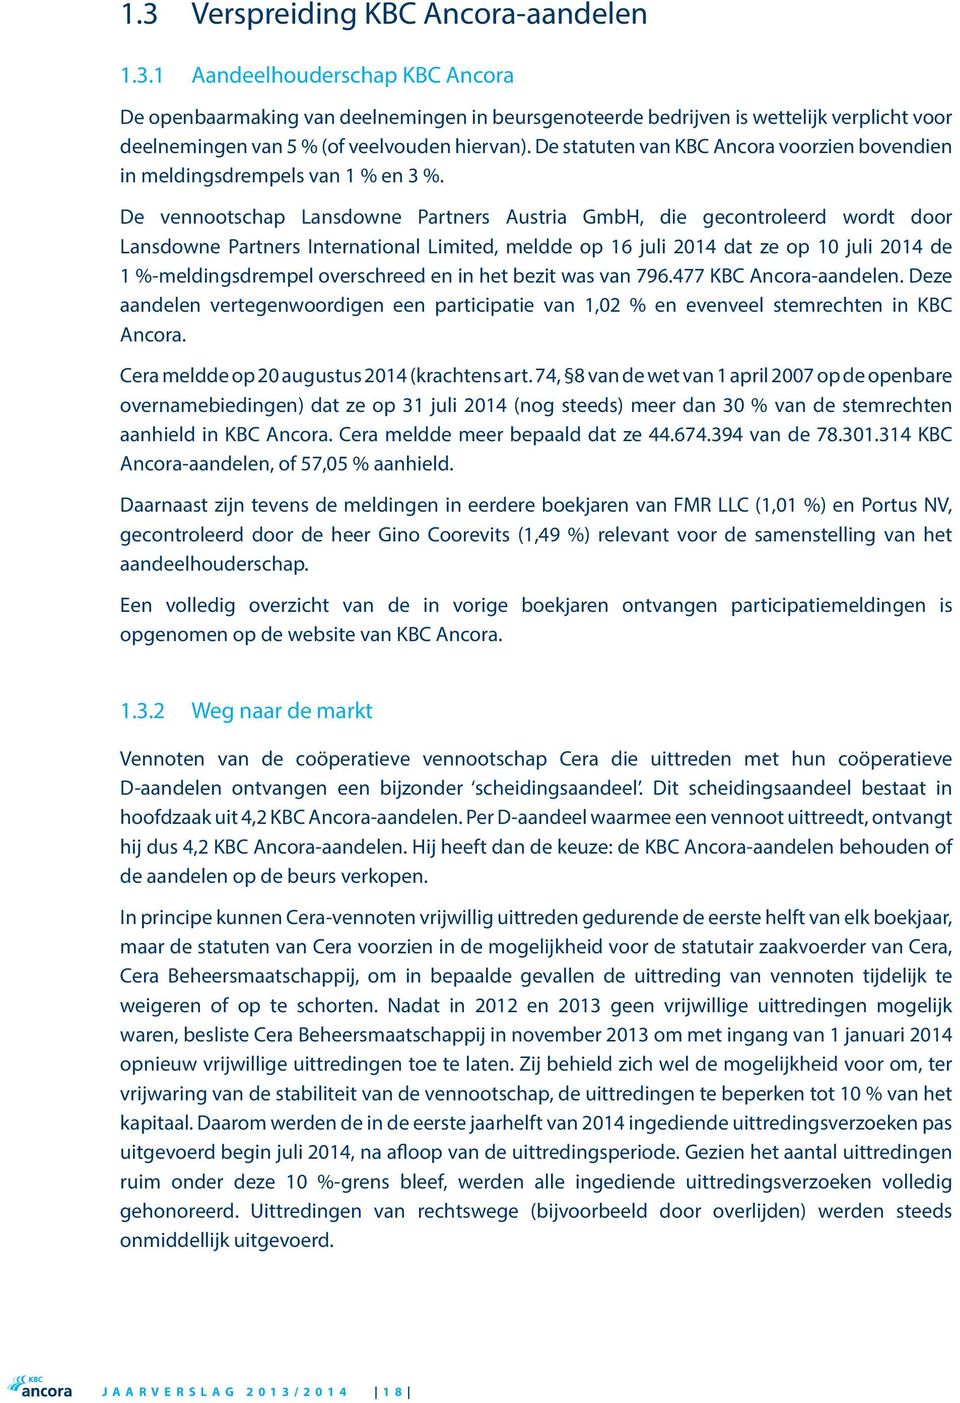 De vennootschap Lansdowne Partners Austria GmbH, die gecontroleerd wordt door Lansdowne Partners International Limited, meldde op 16 juli 2014 dat ze op 10 juli 2014 de 1 %-meldingsdrempel